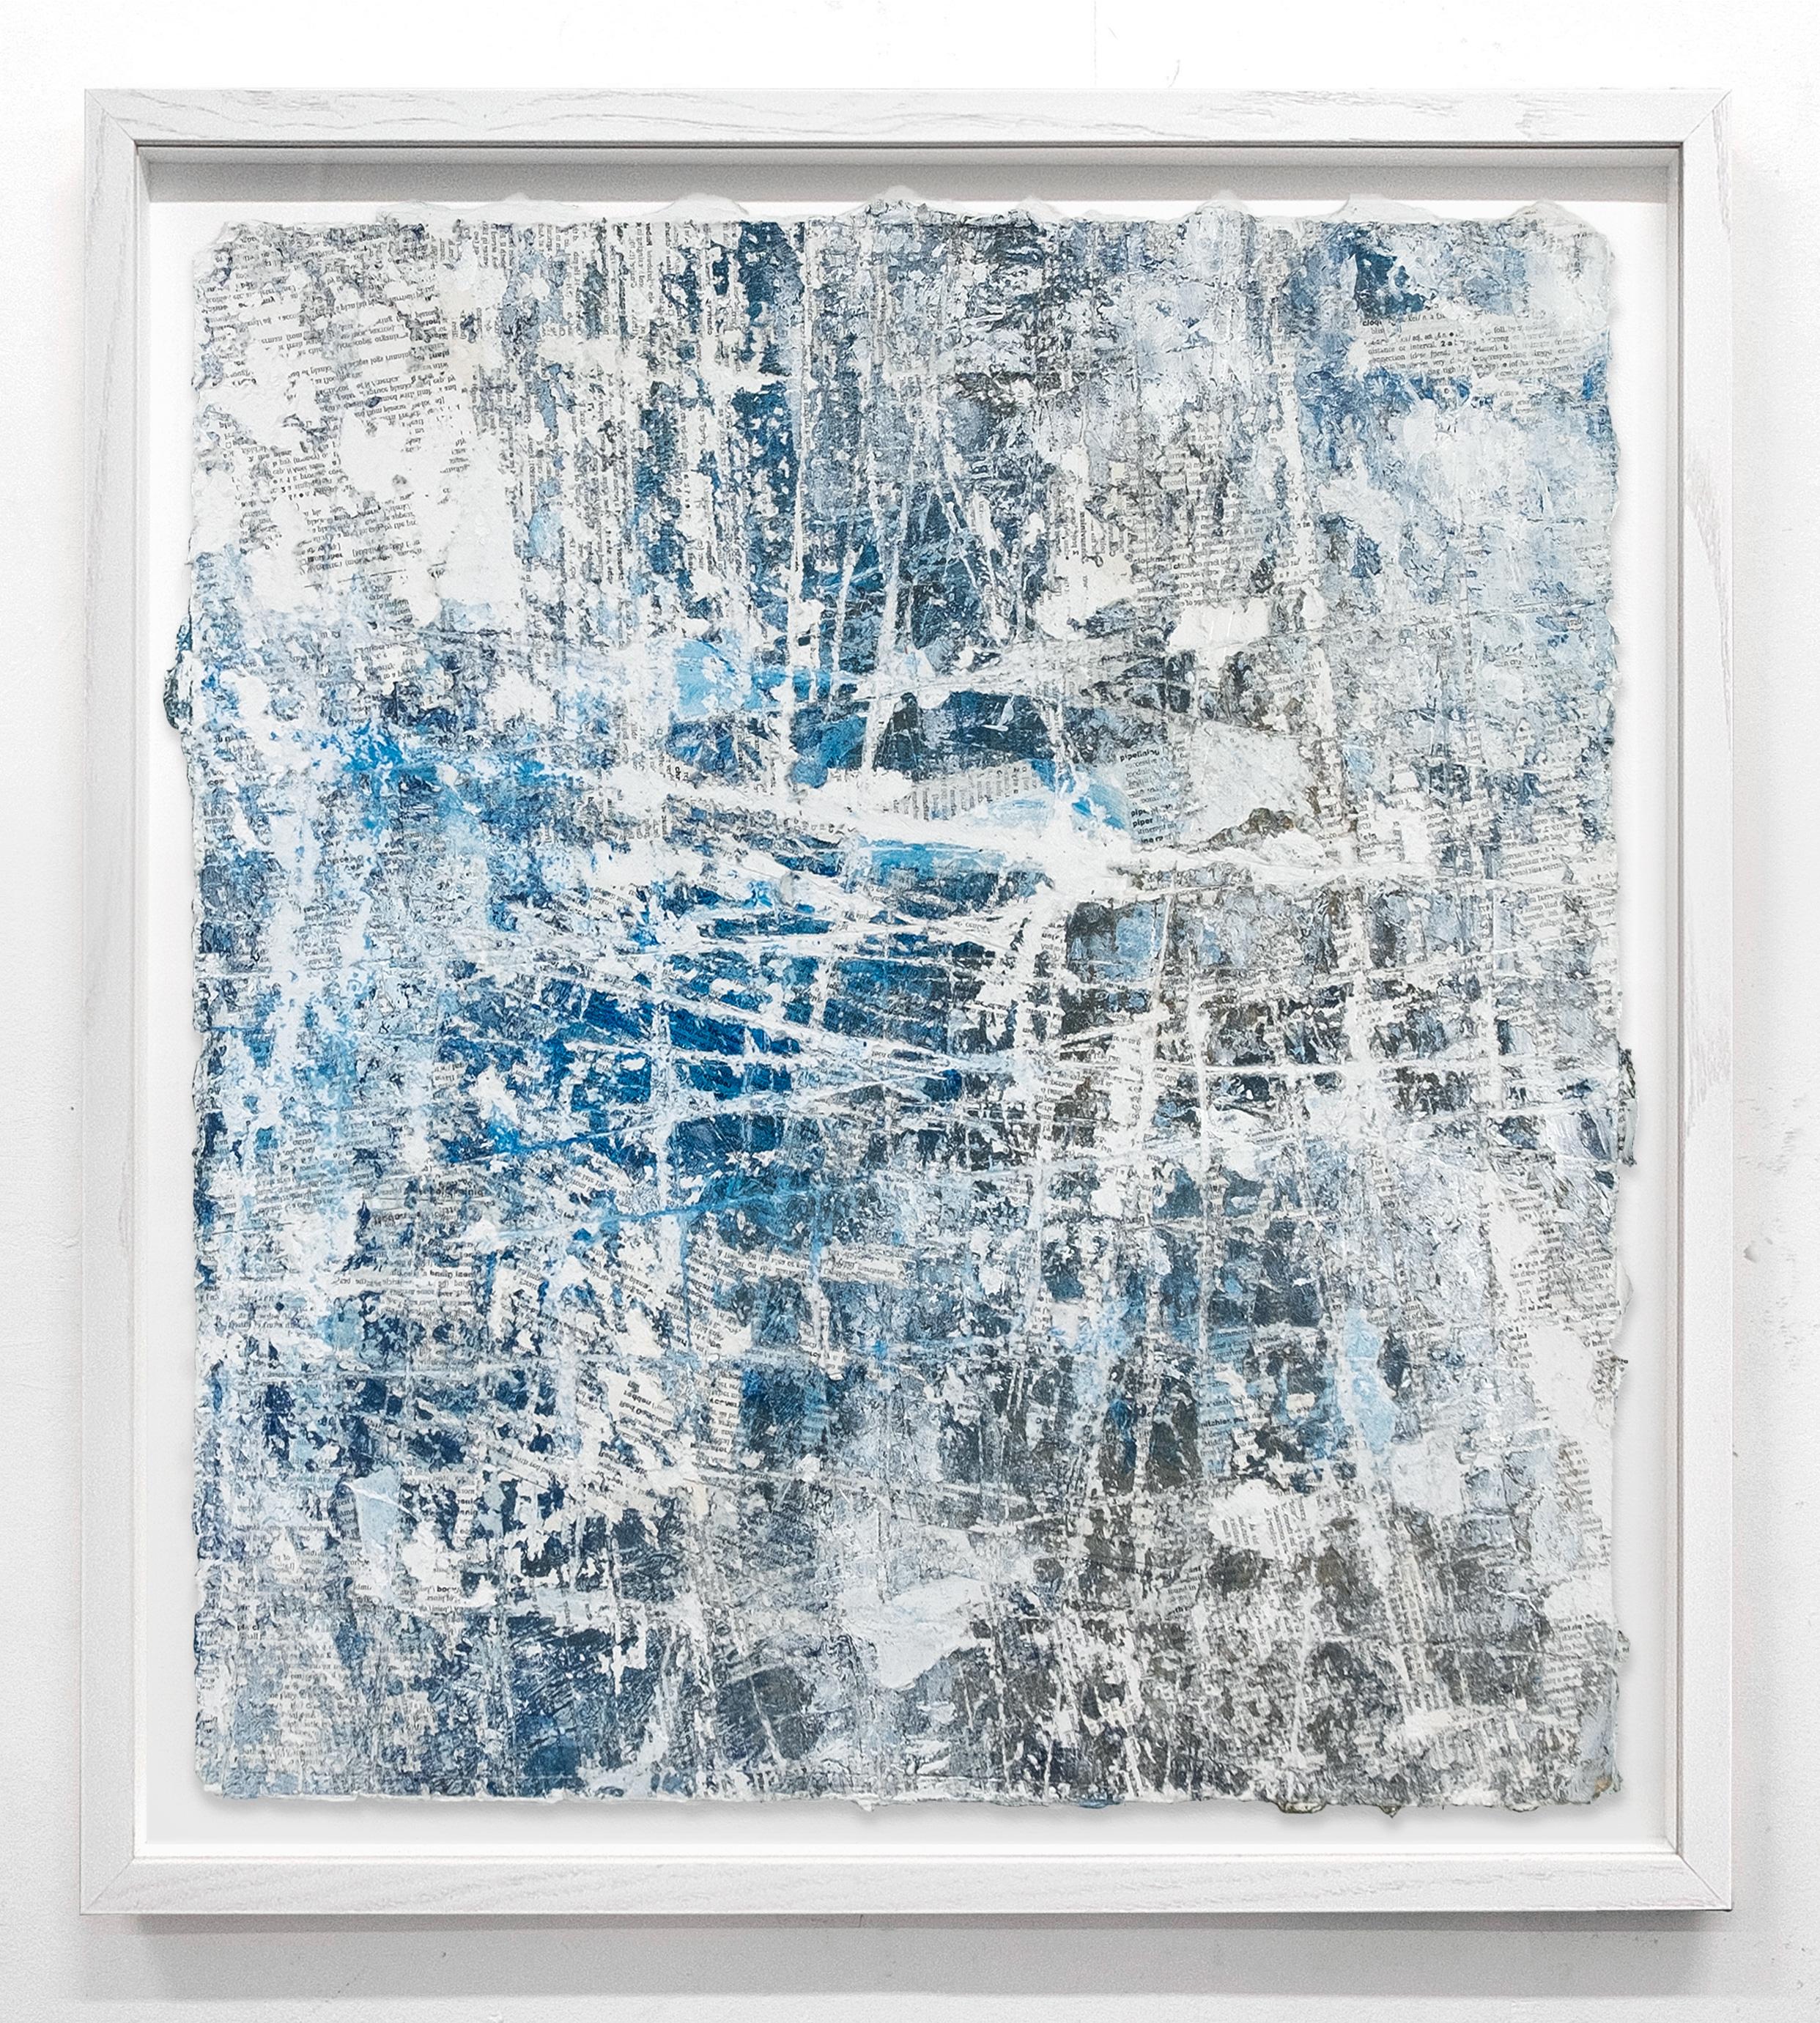 David Fredrik Moussallem Abstract Drawing – Breathing - Texturiertes blau-weißes abstraktes Gemälde auf Papier, gerahmt